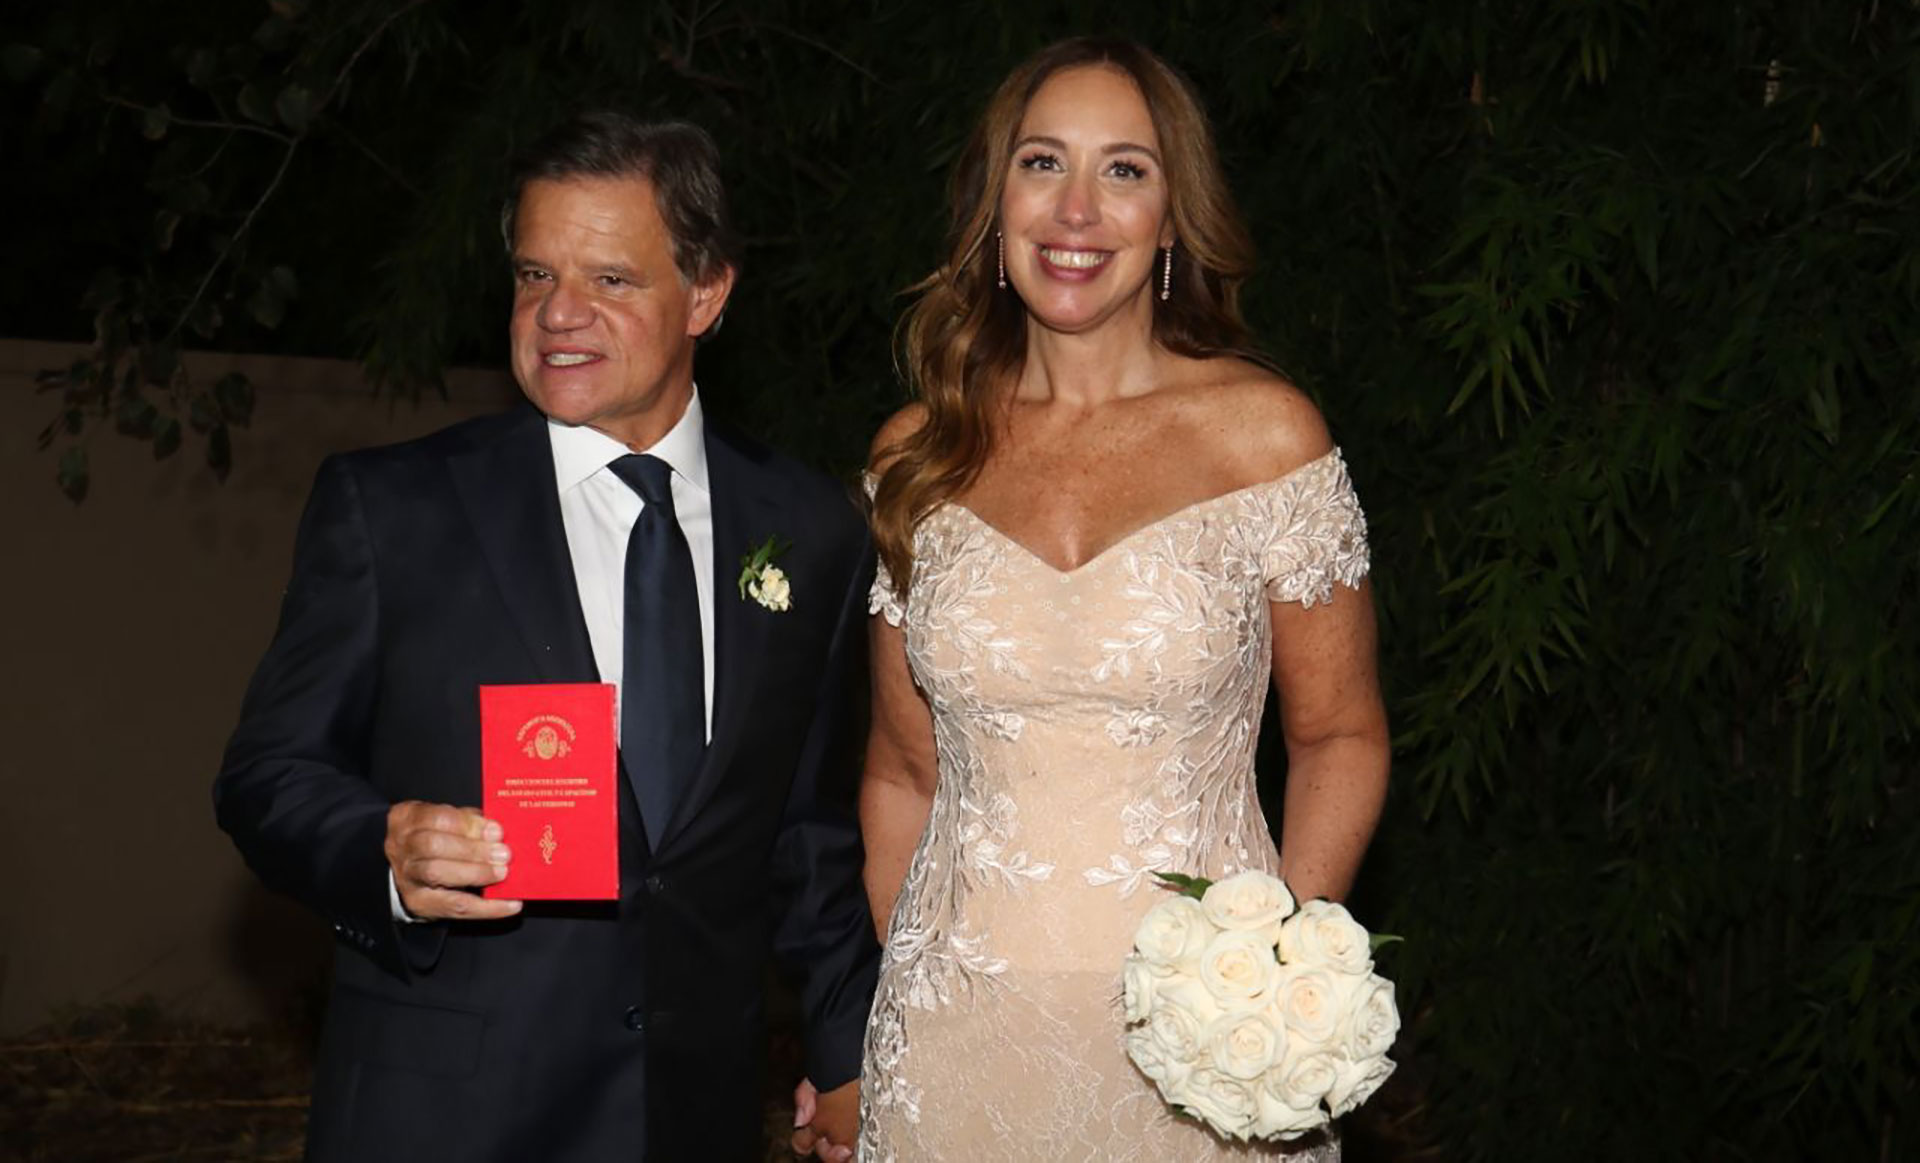 El casamiento de María Eugenia Vidal y “Quique” Sacco: los políticos invitados y las primeras fotos del festejo